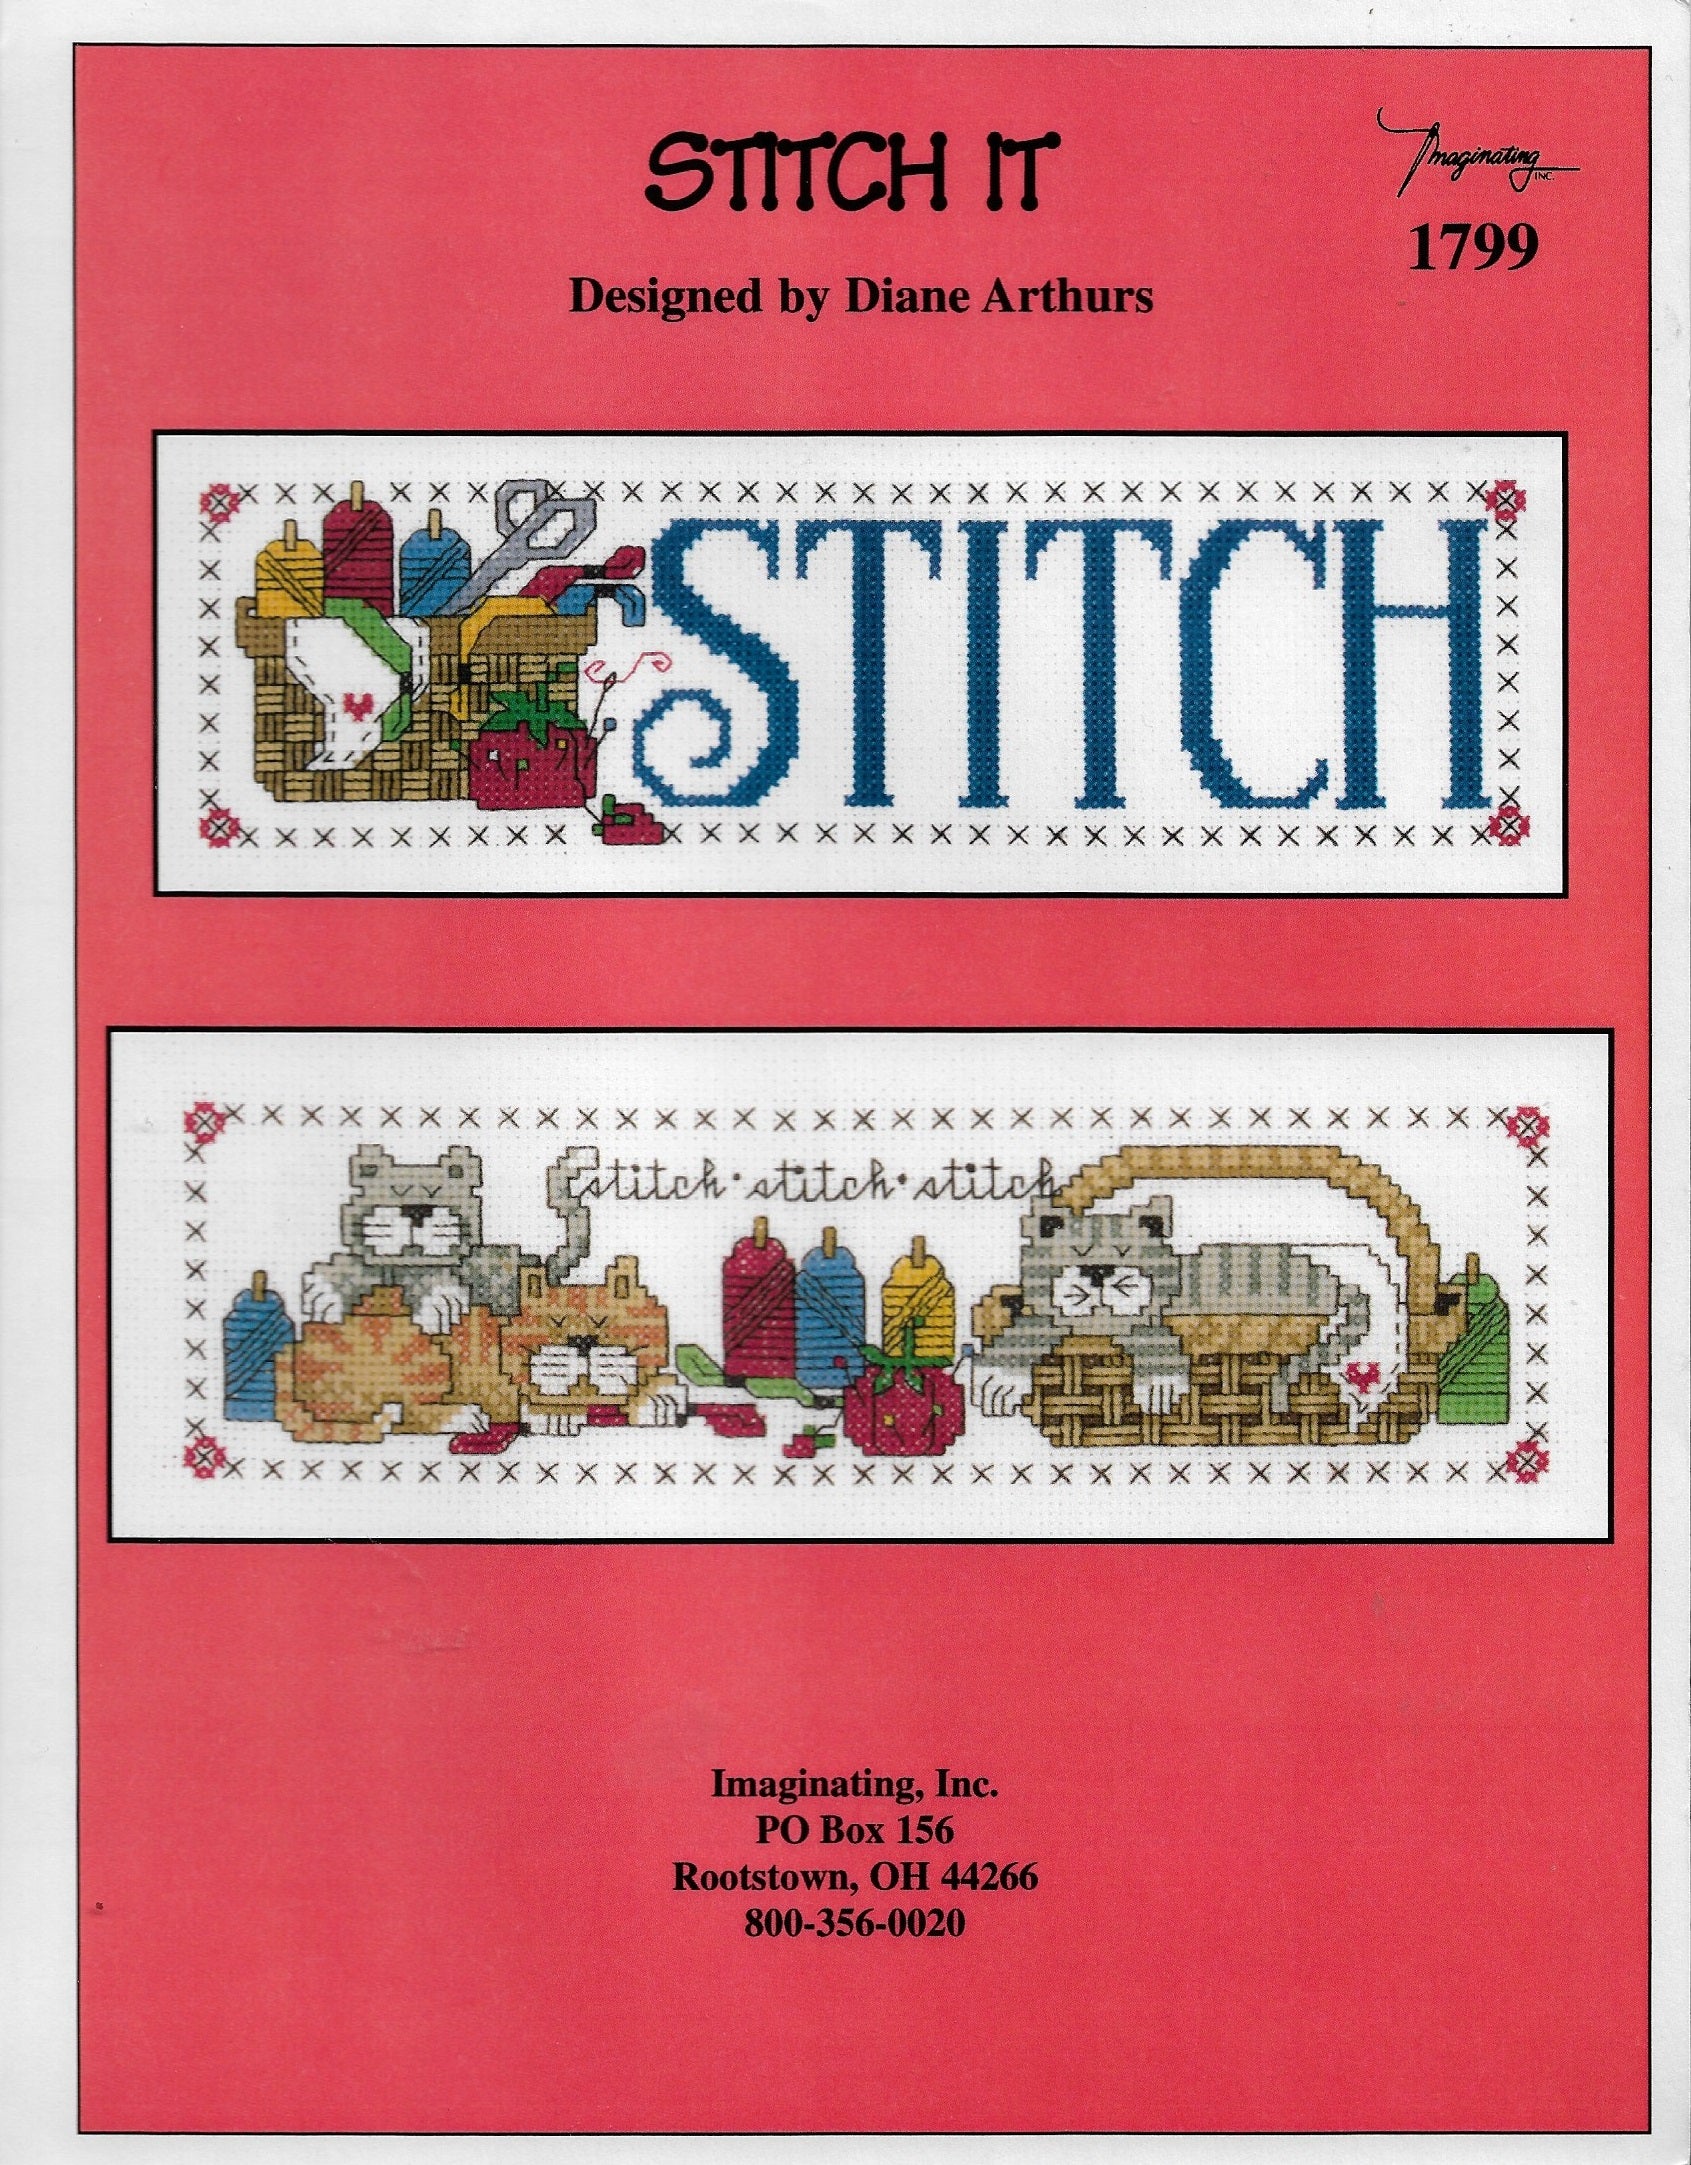 Imaginating Stitch It cross stitch pattern